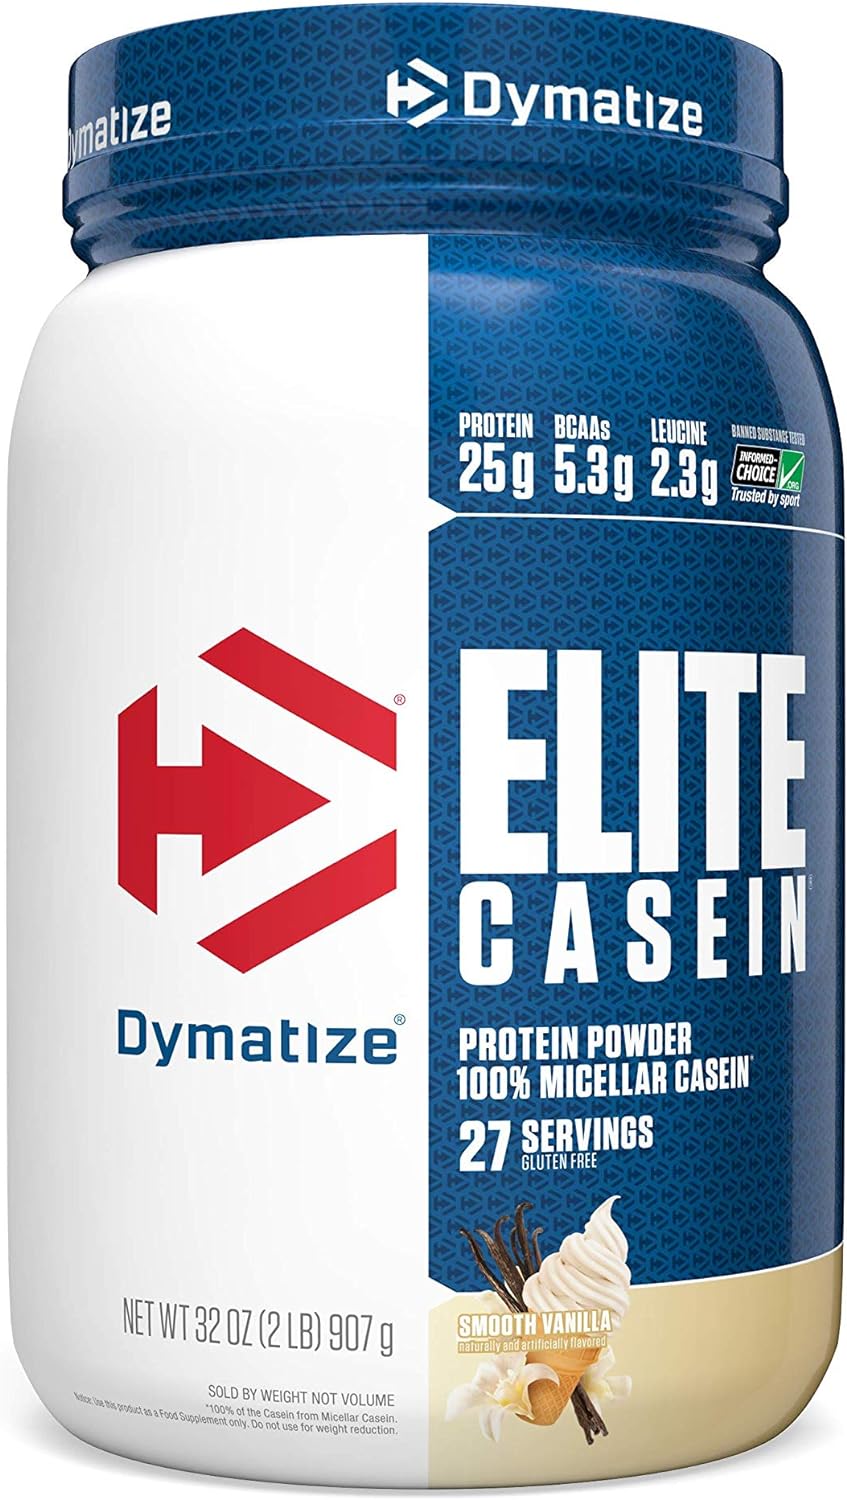 Dymatize Elite 100% Micellar Casein Protein Powder, Slow Absorbing wit